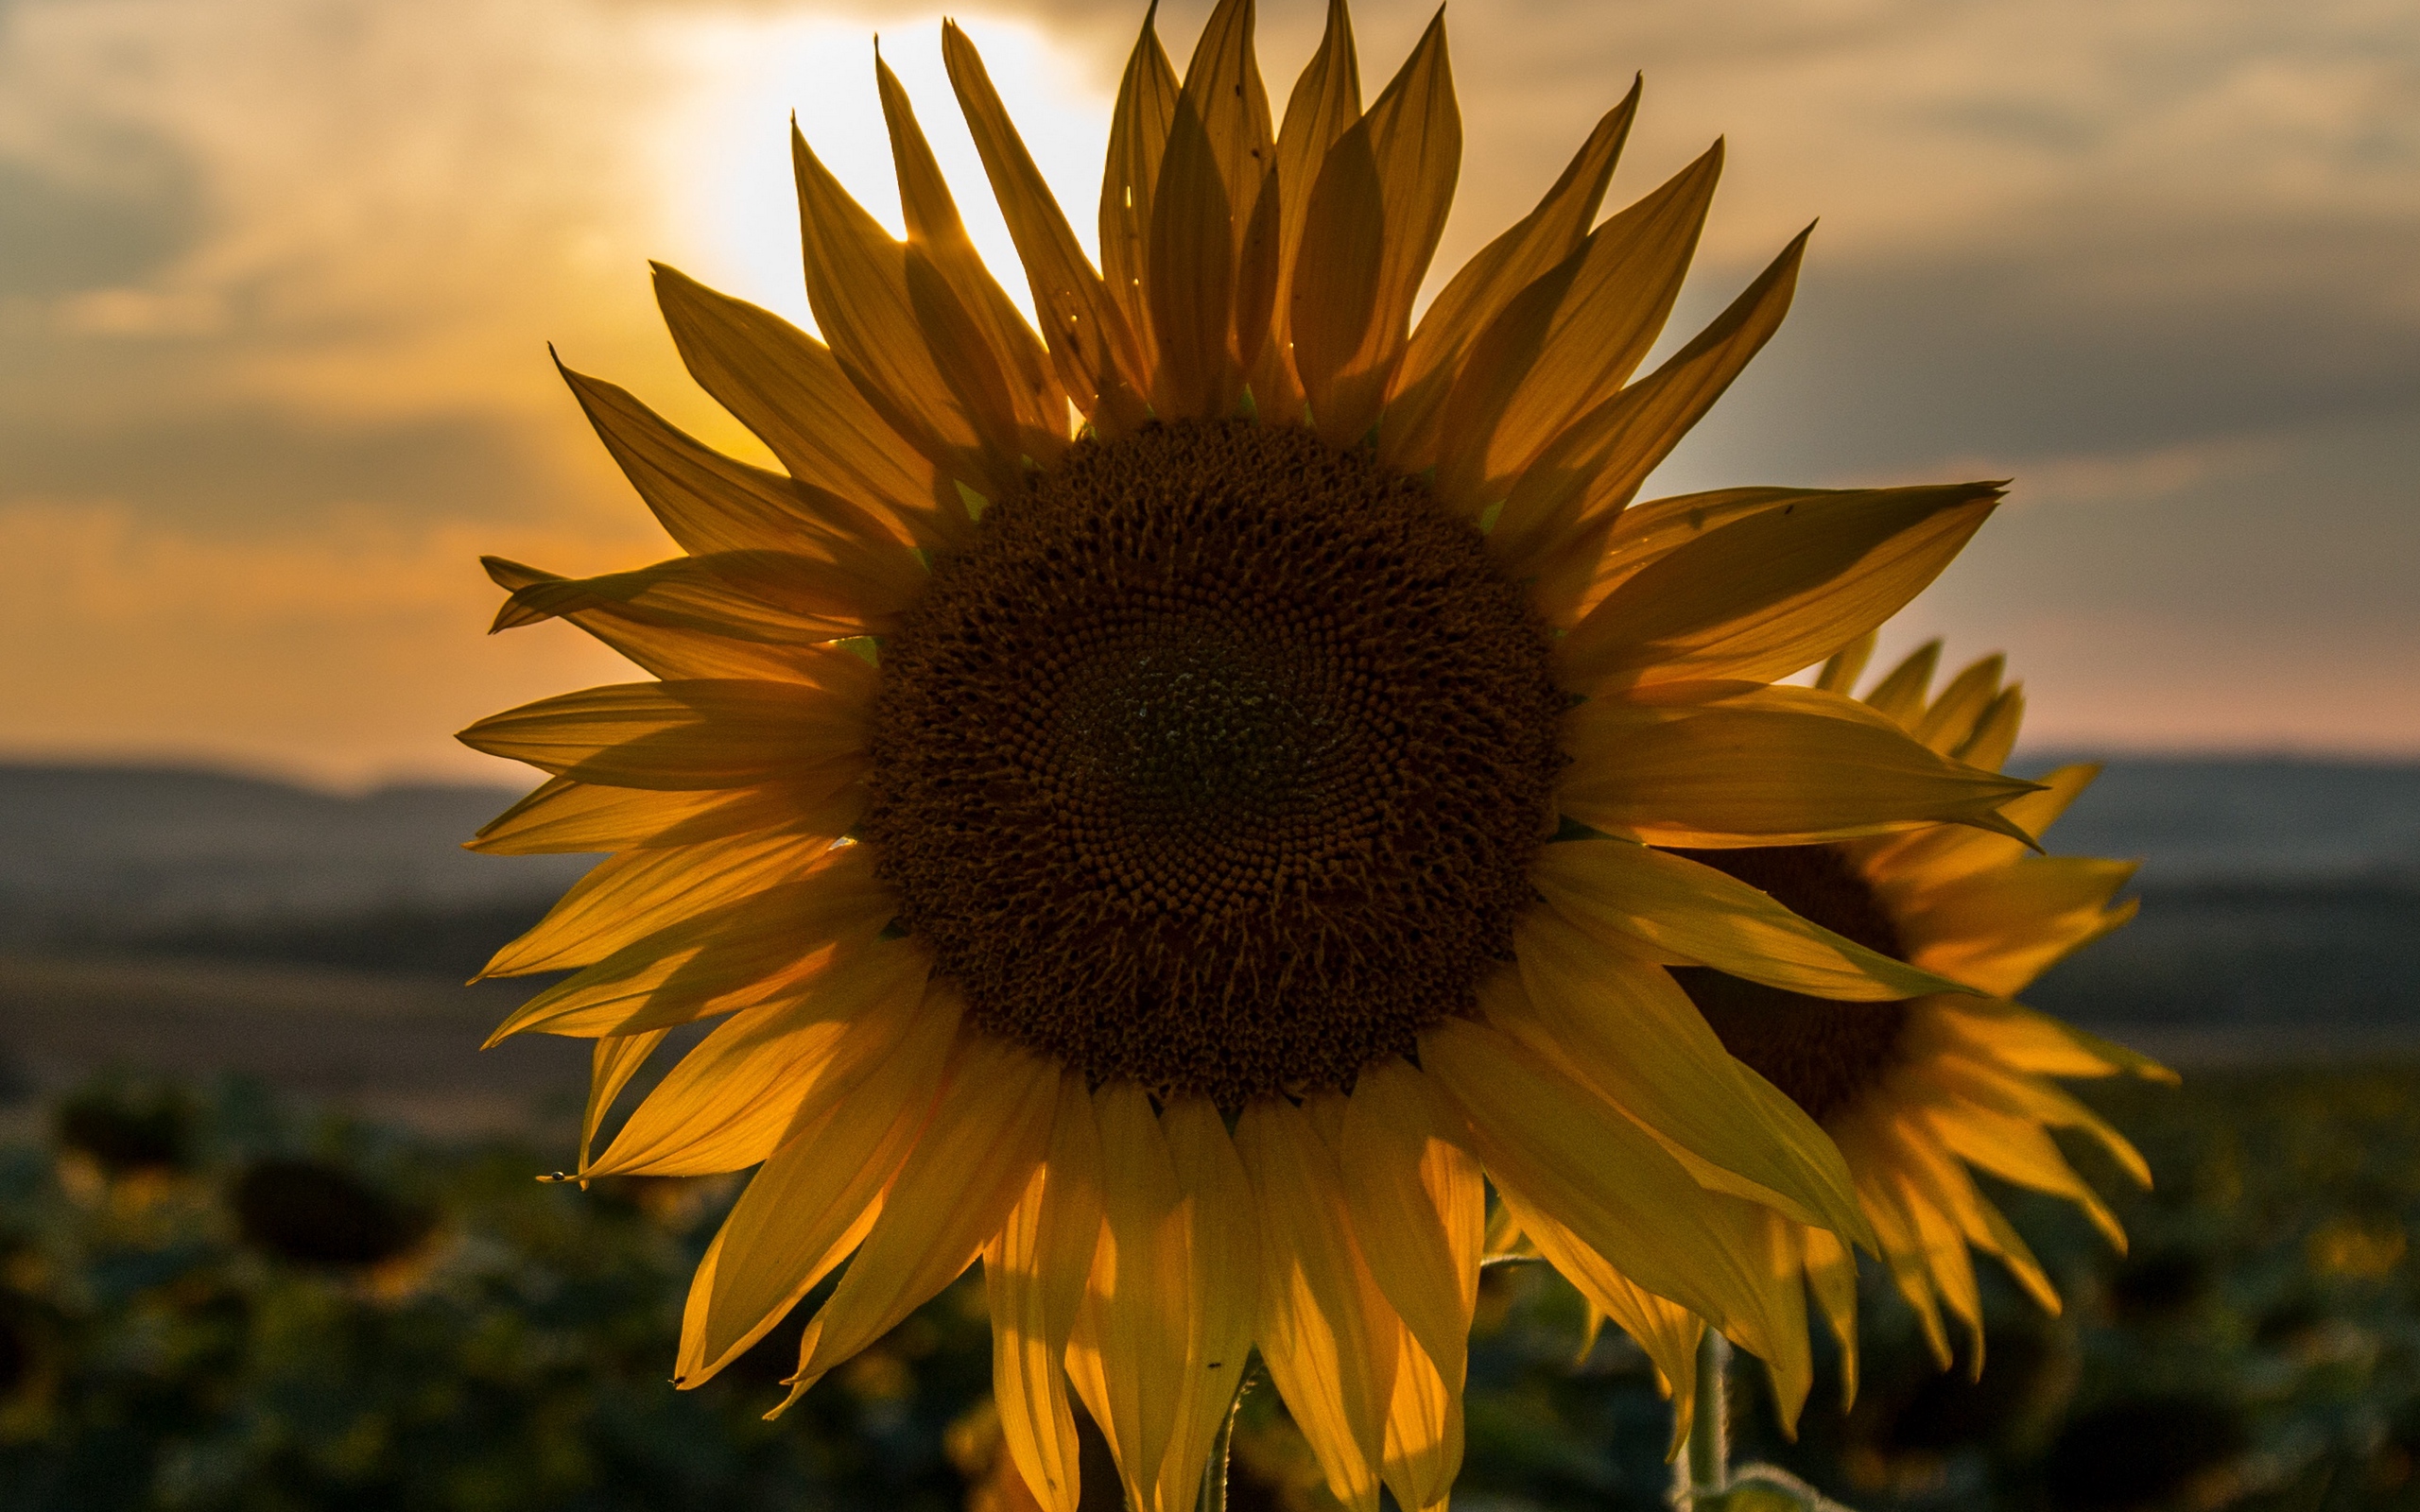 Download wallpaper 2560x1600 sunflower, sunset, field, sky, summer